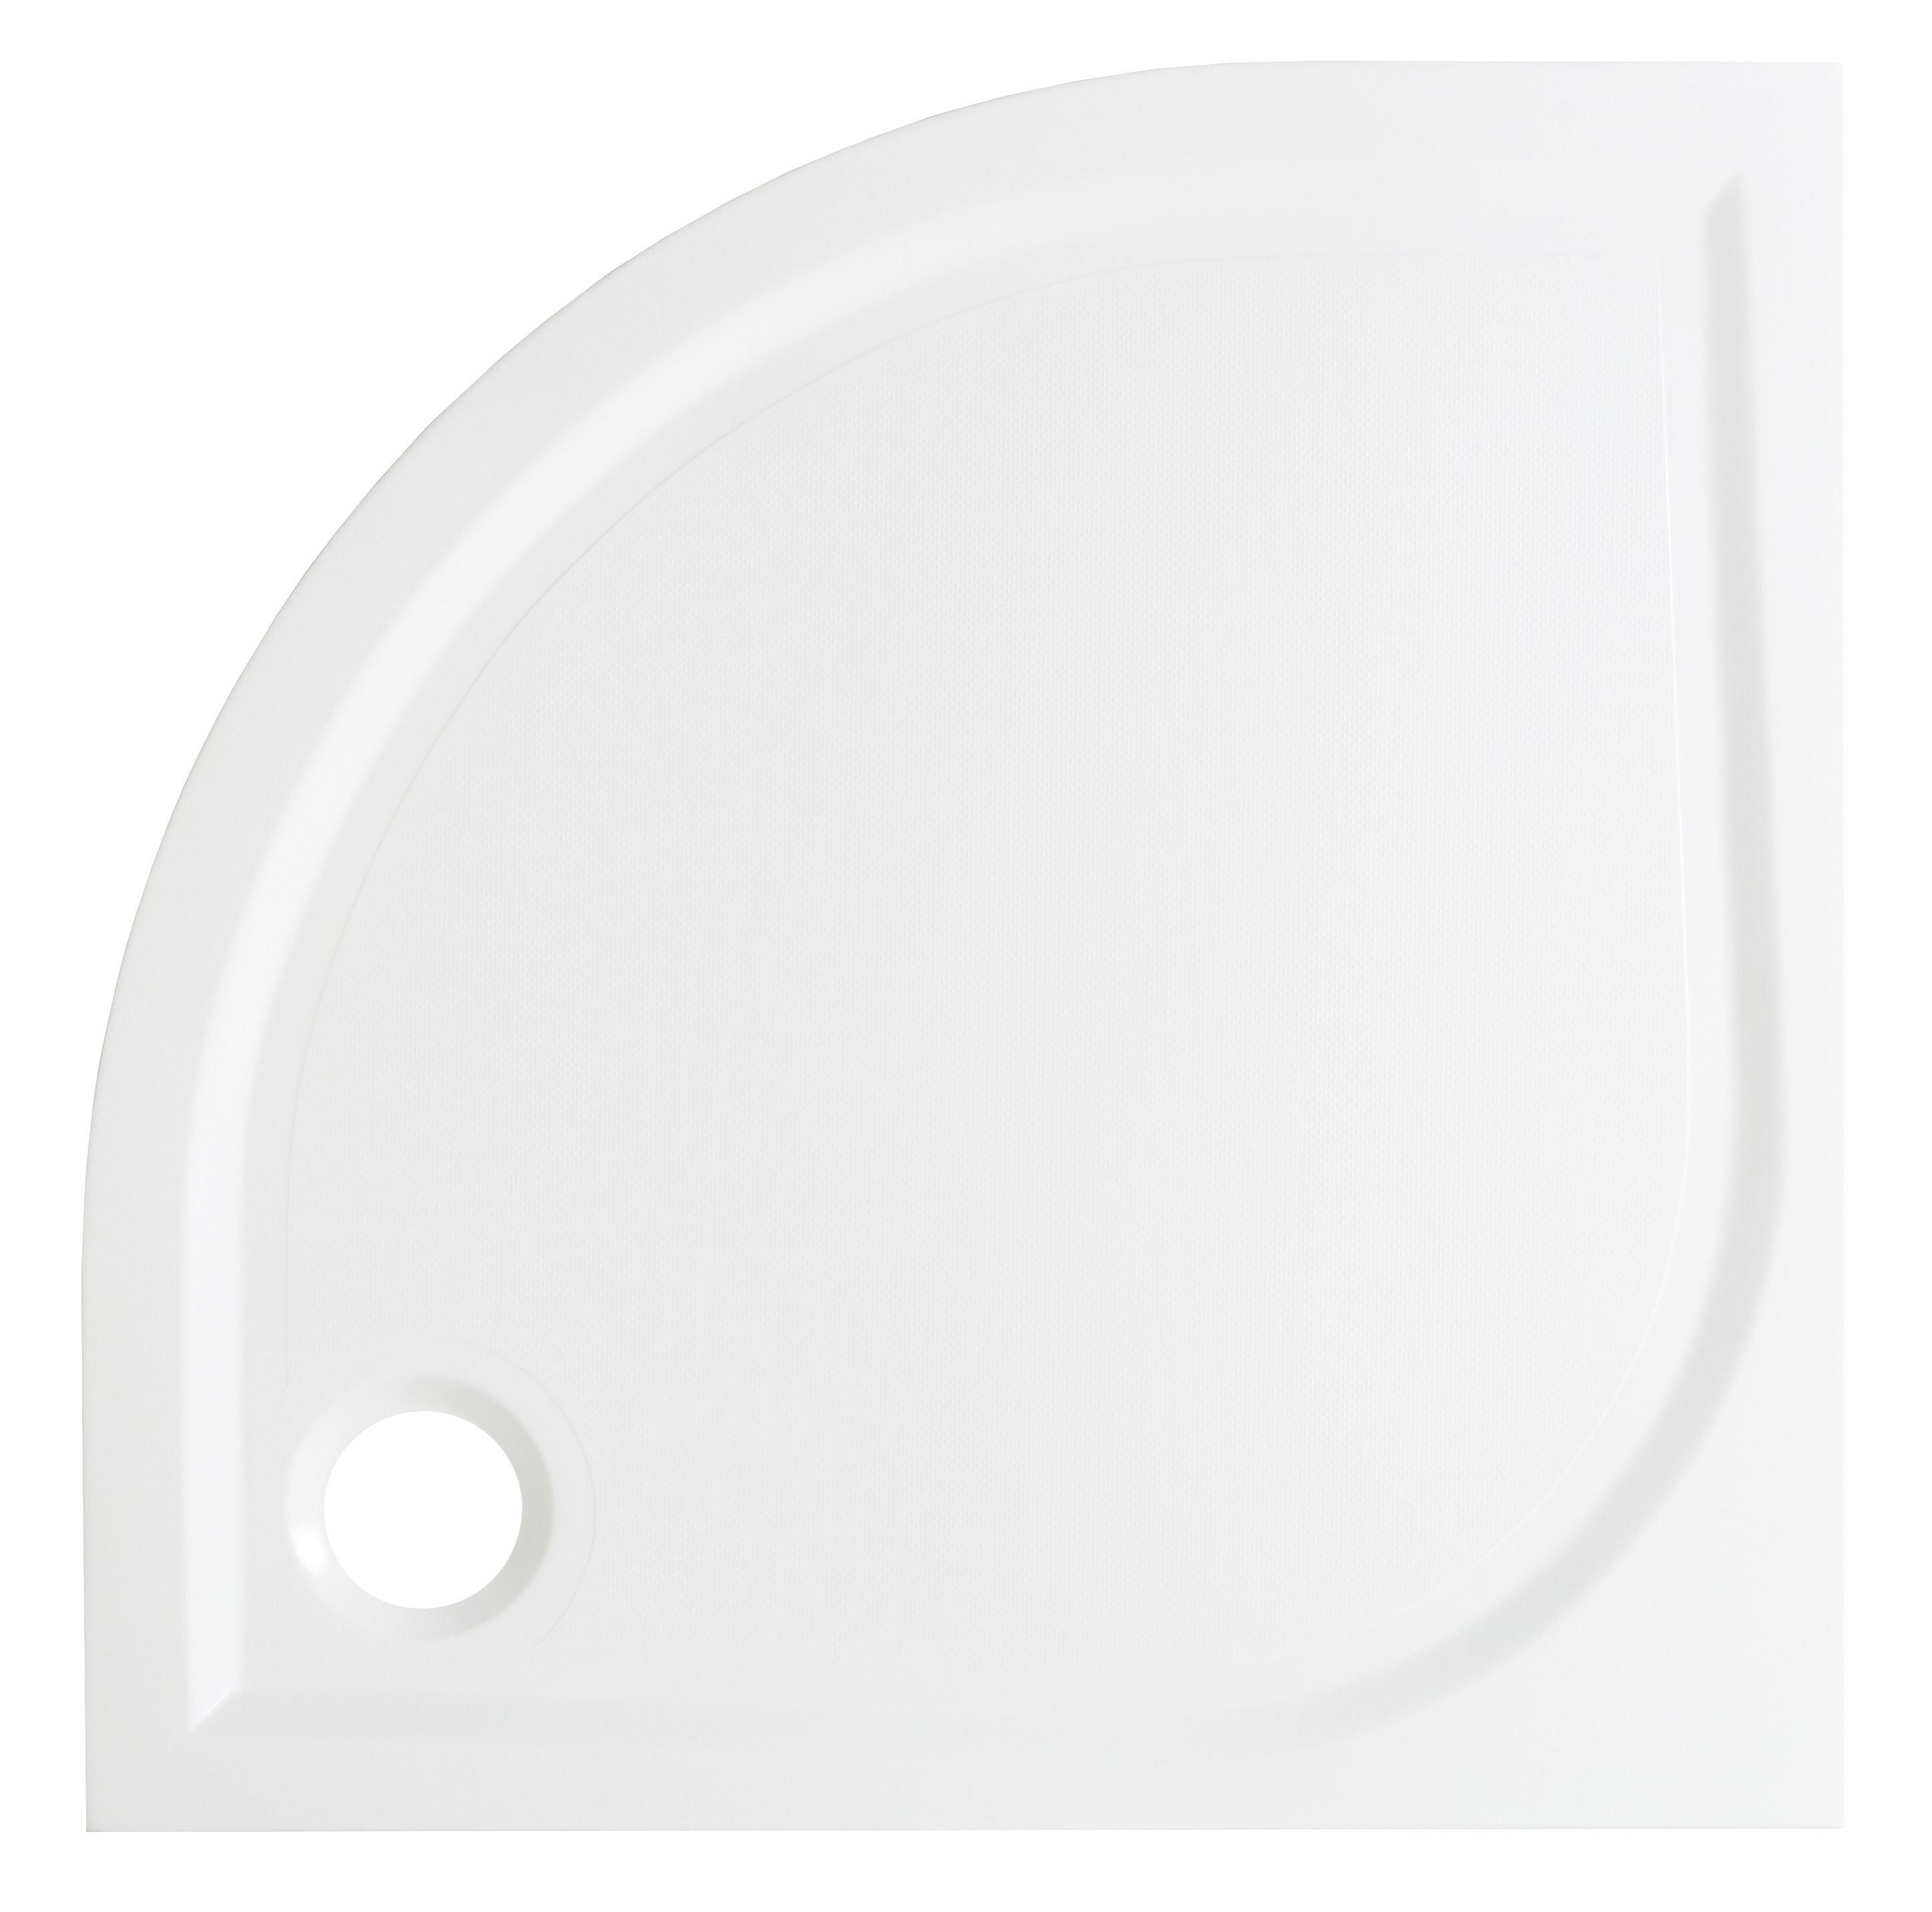 GoodHome Limski White Quadrant Shower tray (L)80cm (W)80cm (H)2.8cm